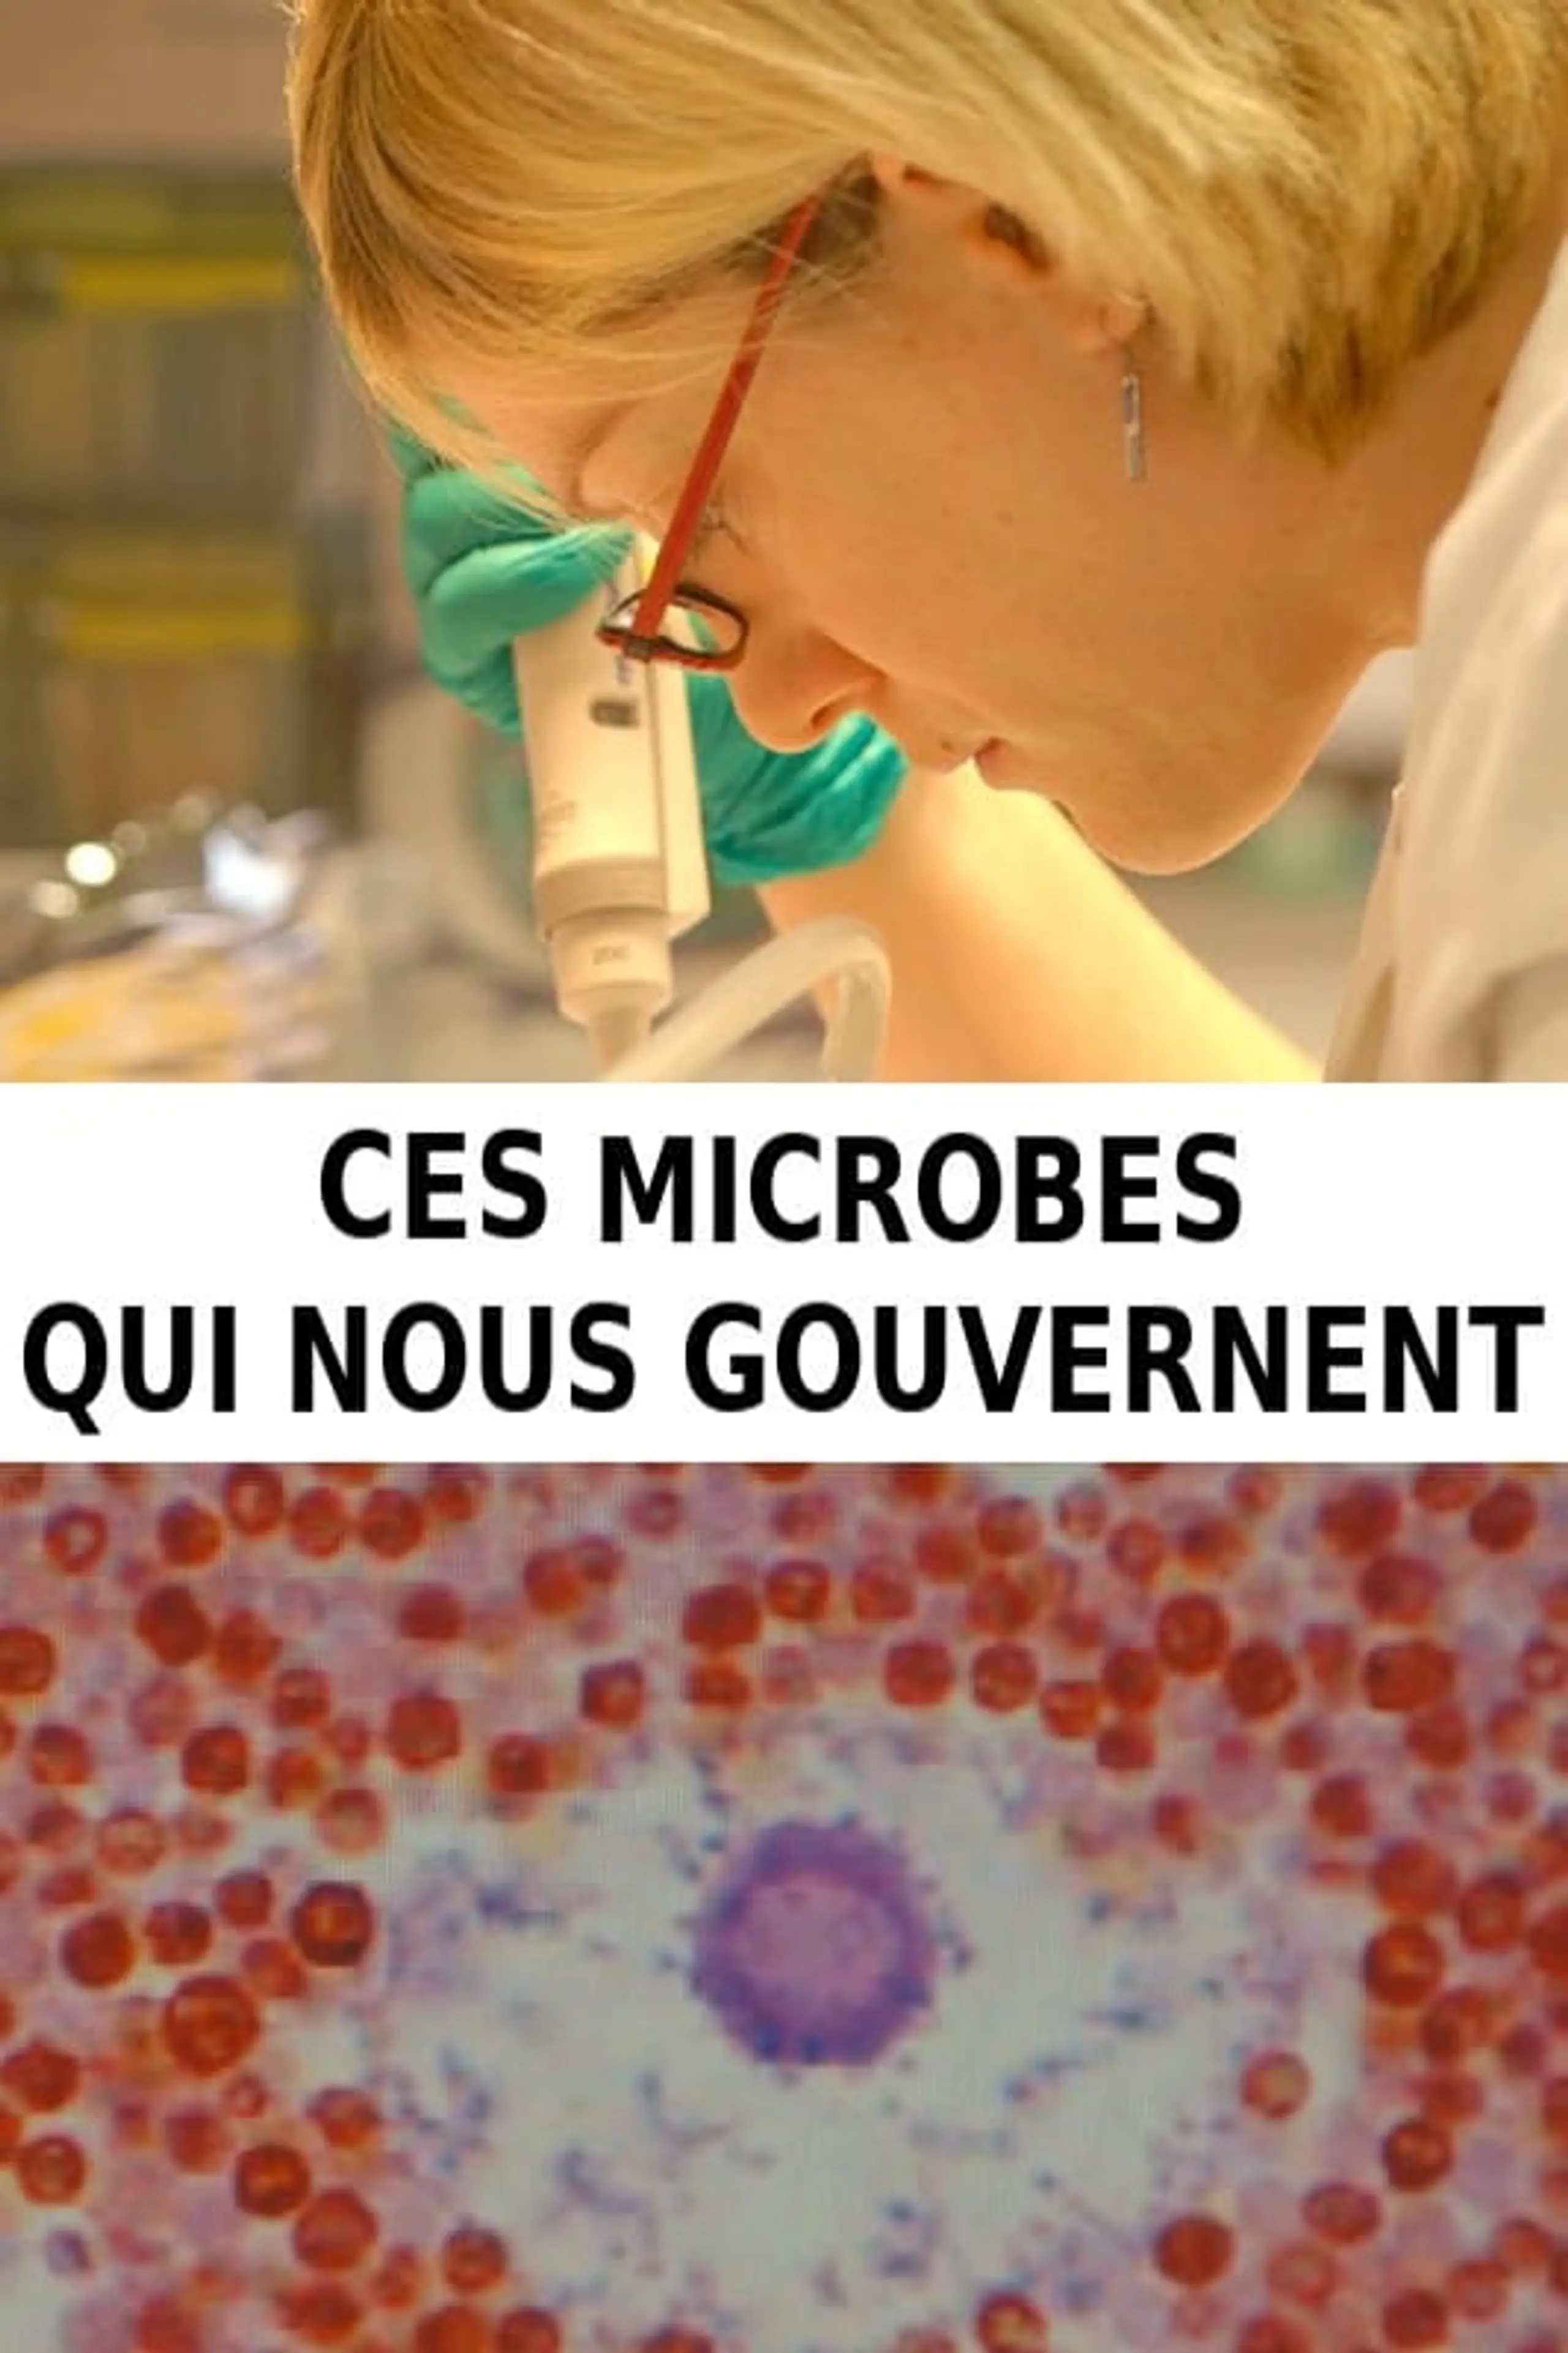 Die unsichtbare Macht der Mikroben